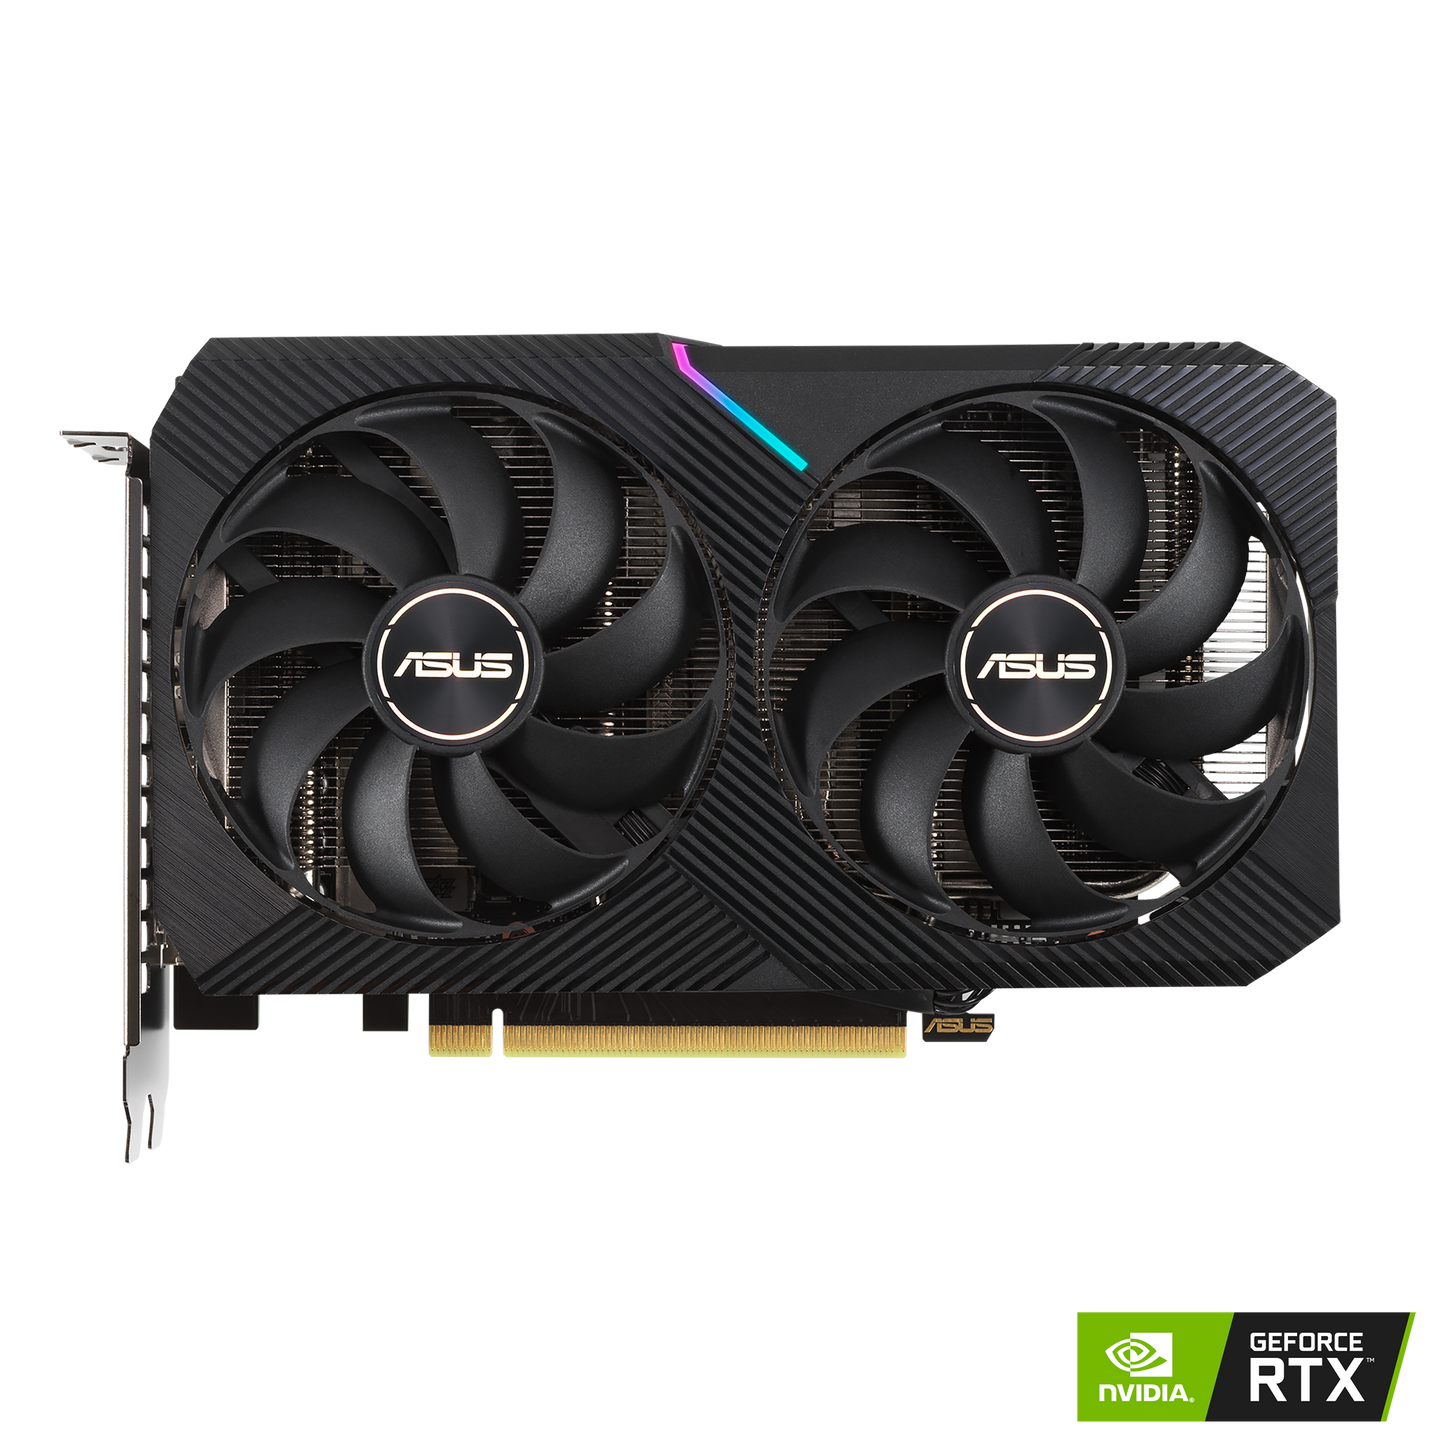 ASUS Dual GeForce RTX 3050 OC Edition 8GB